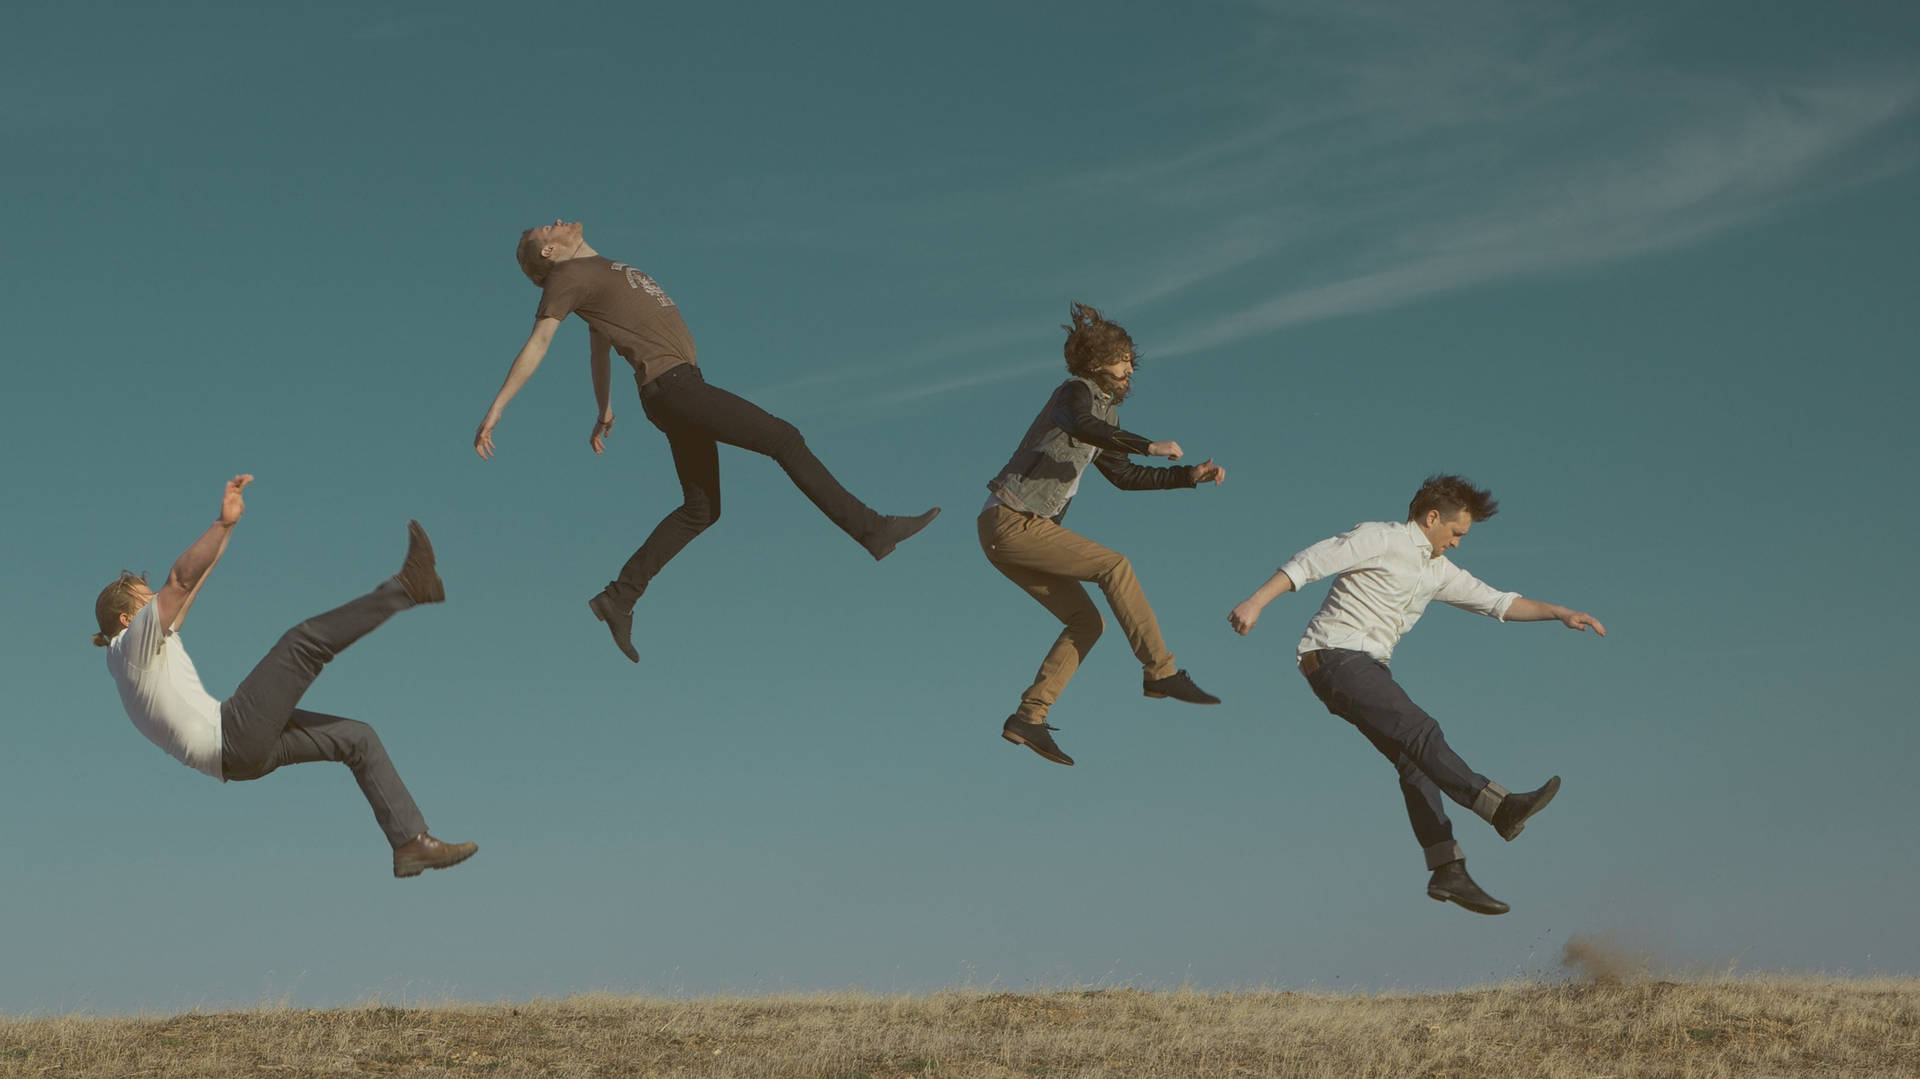 Ungrupo De Personas Saltando En El Aire Fondo de pantalla